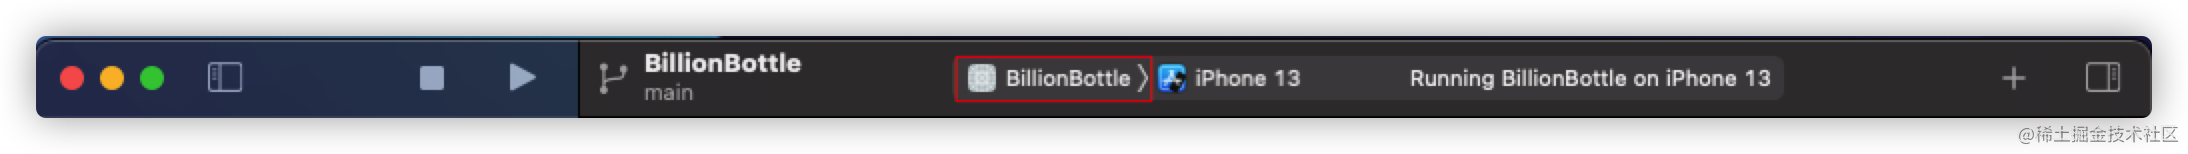 choose-scheme-billion-bottle